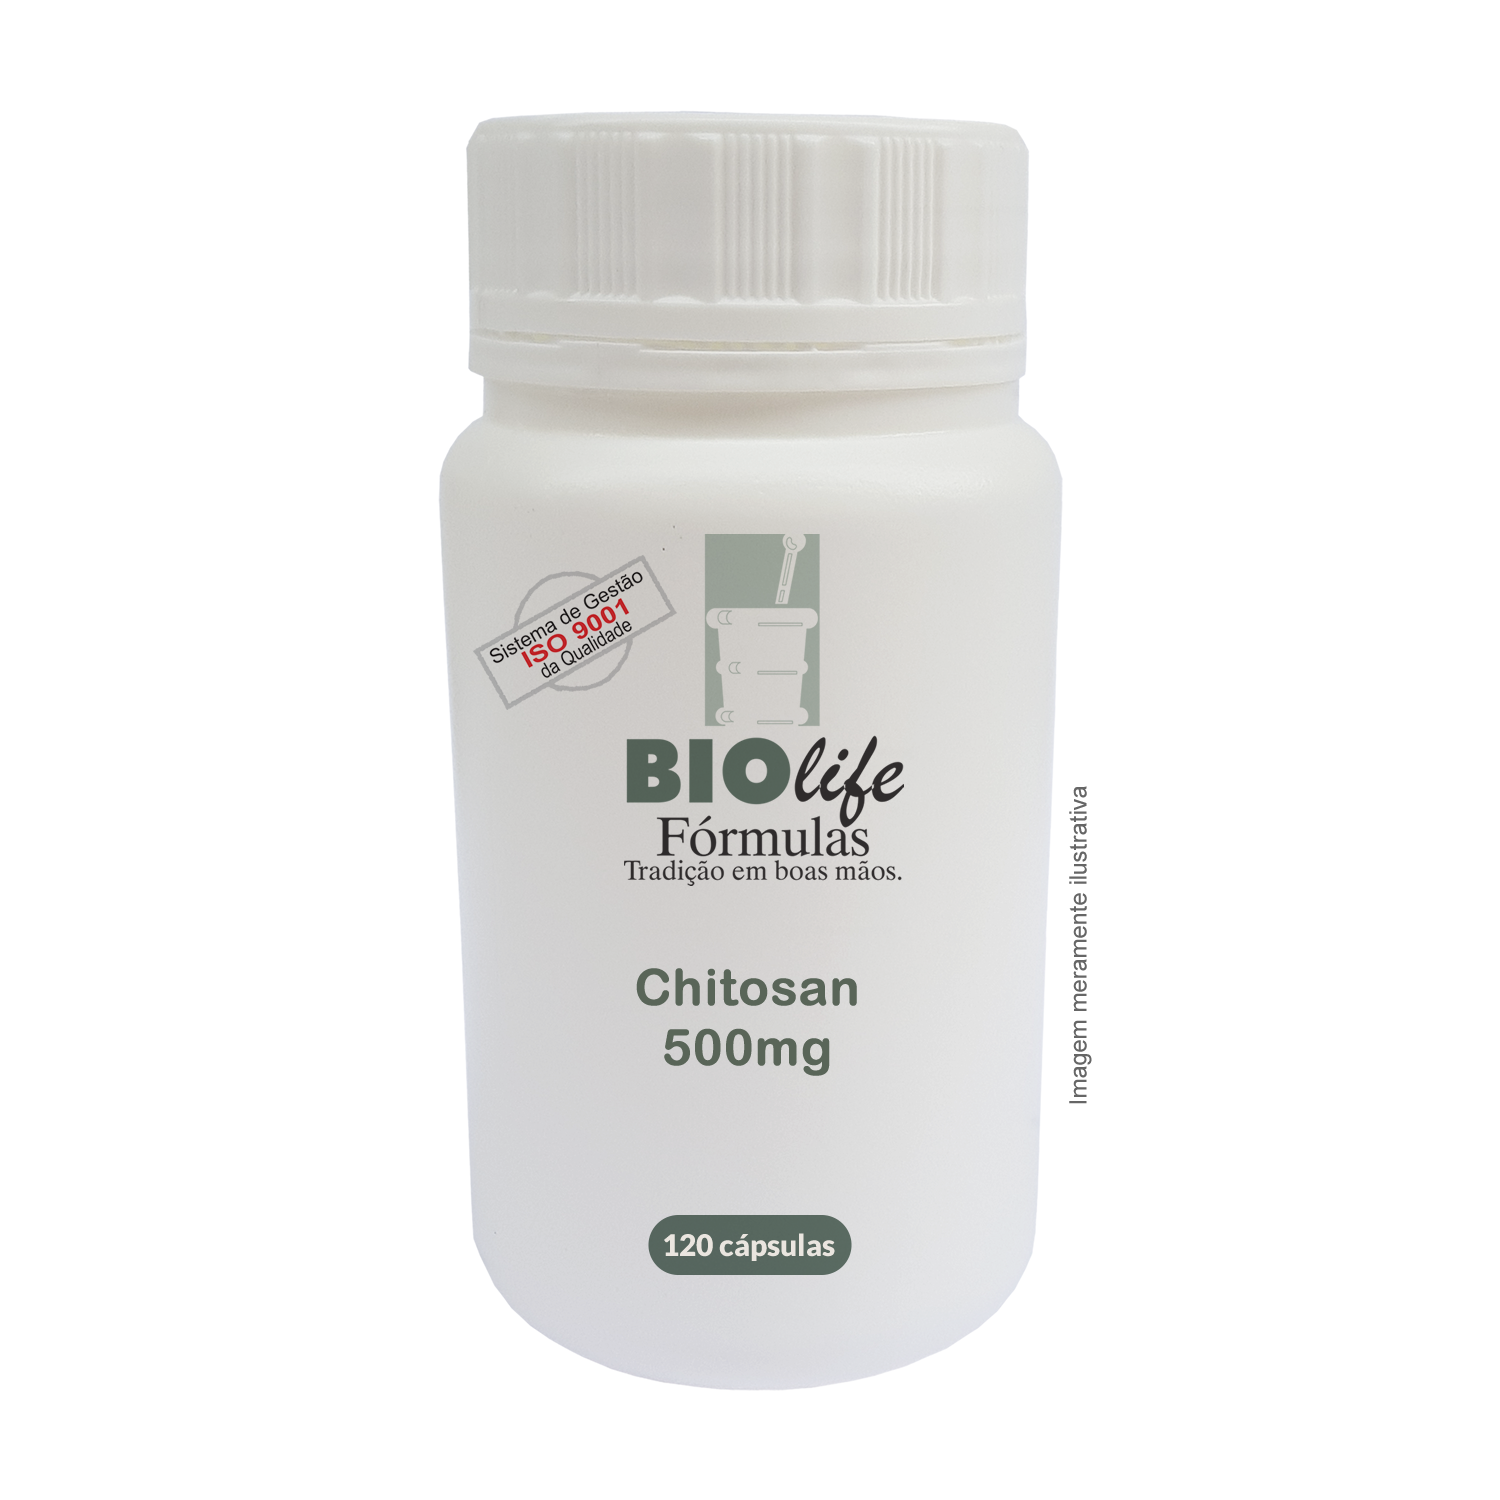 CHITOSAN - Auxiliar no Regime de Emagrecimento - BioLife